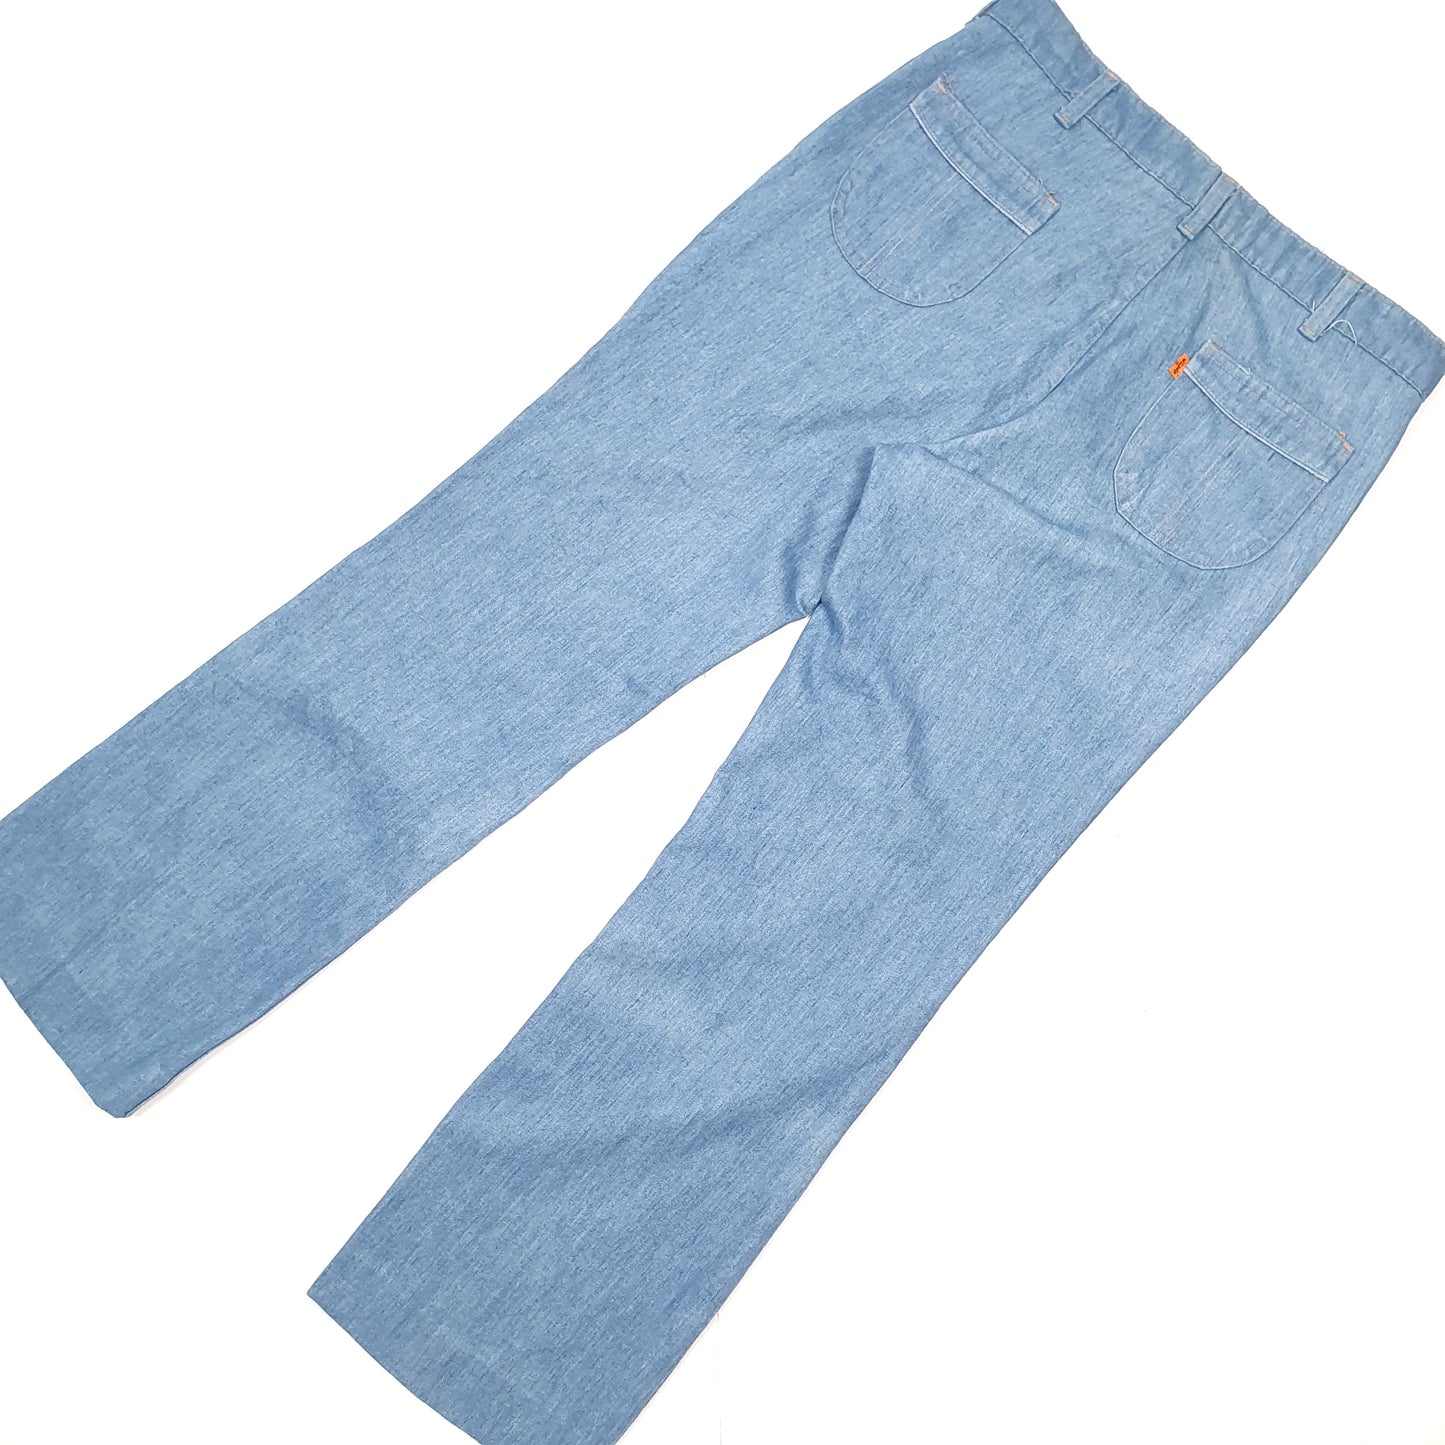 Mens Levis Orange Tab Straight Leg Blue Chino Trousers W32 L30 Blue